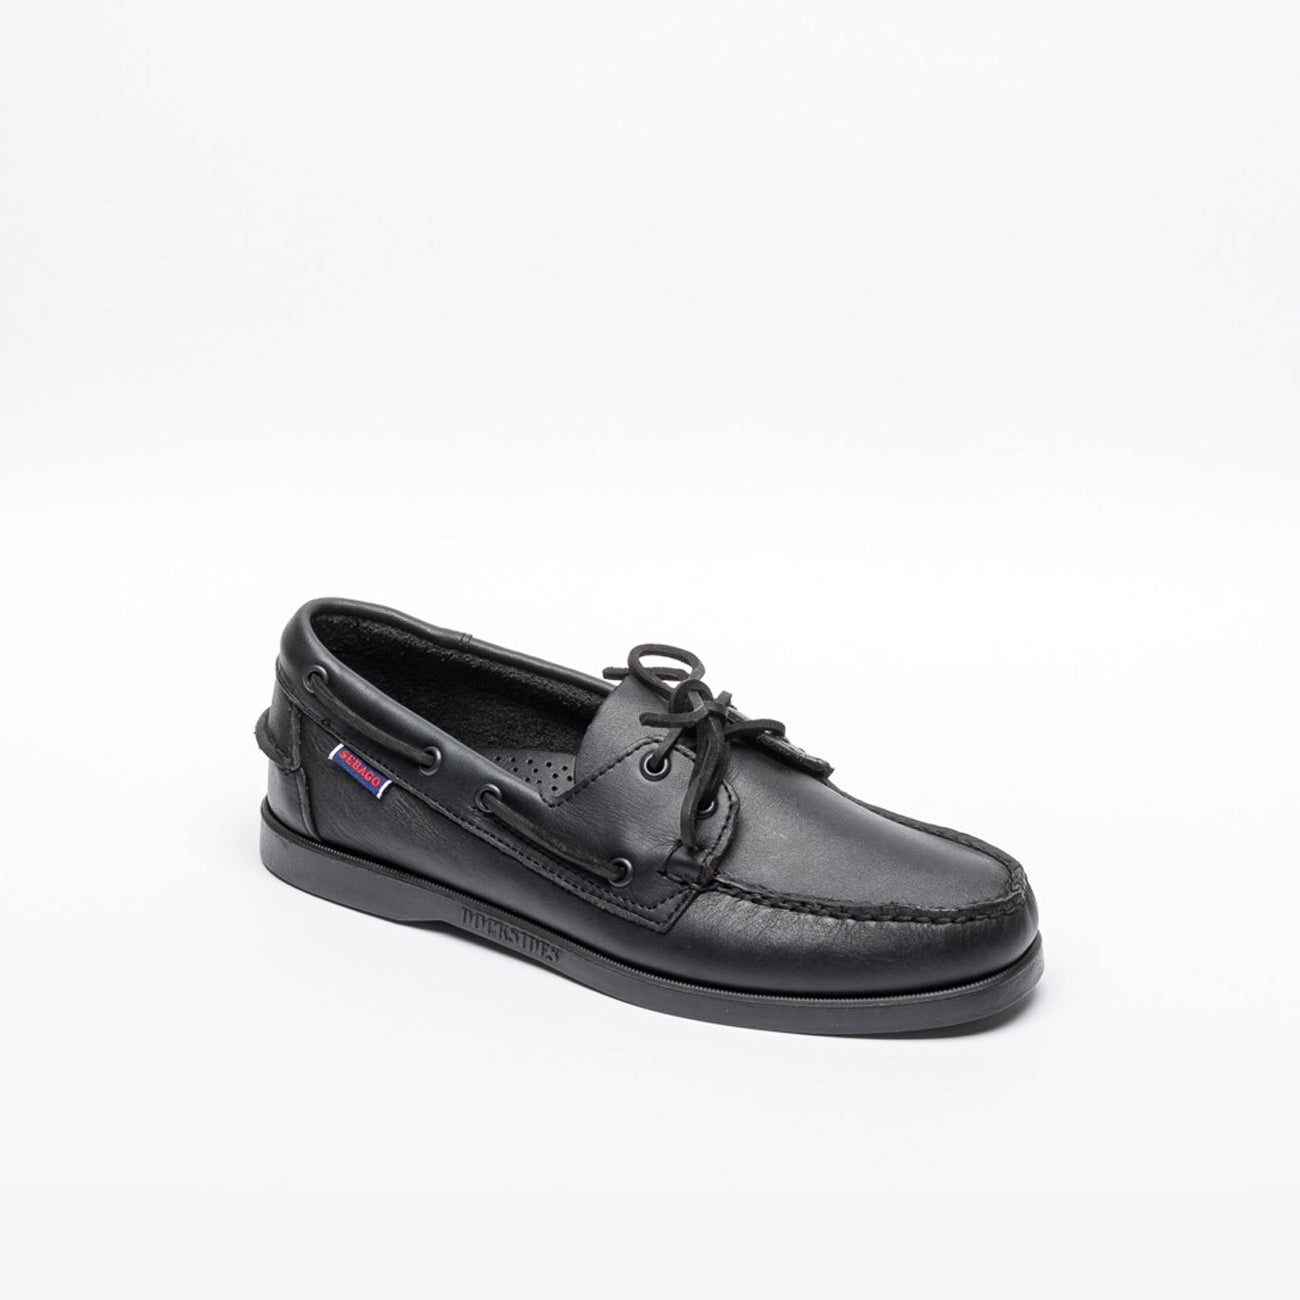 Sebago Docksides black leather loafer